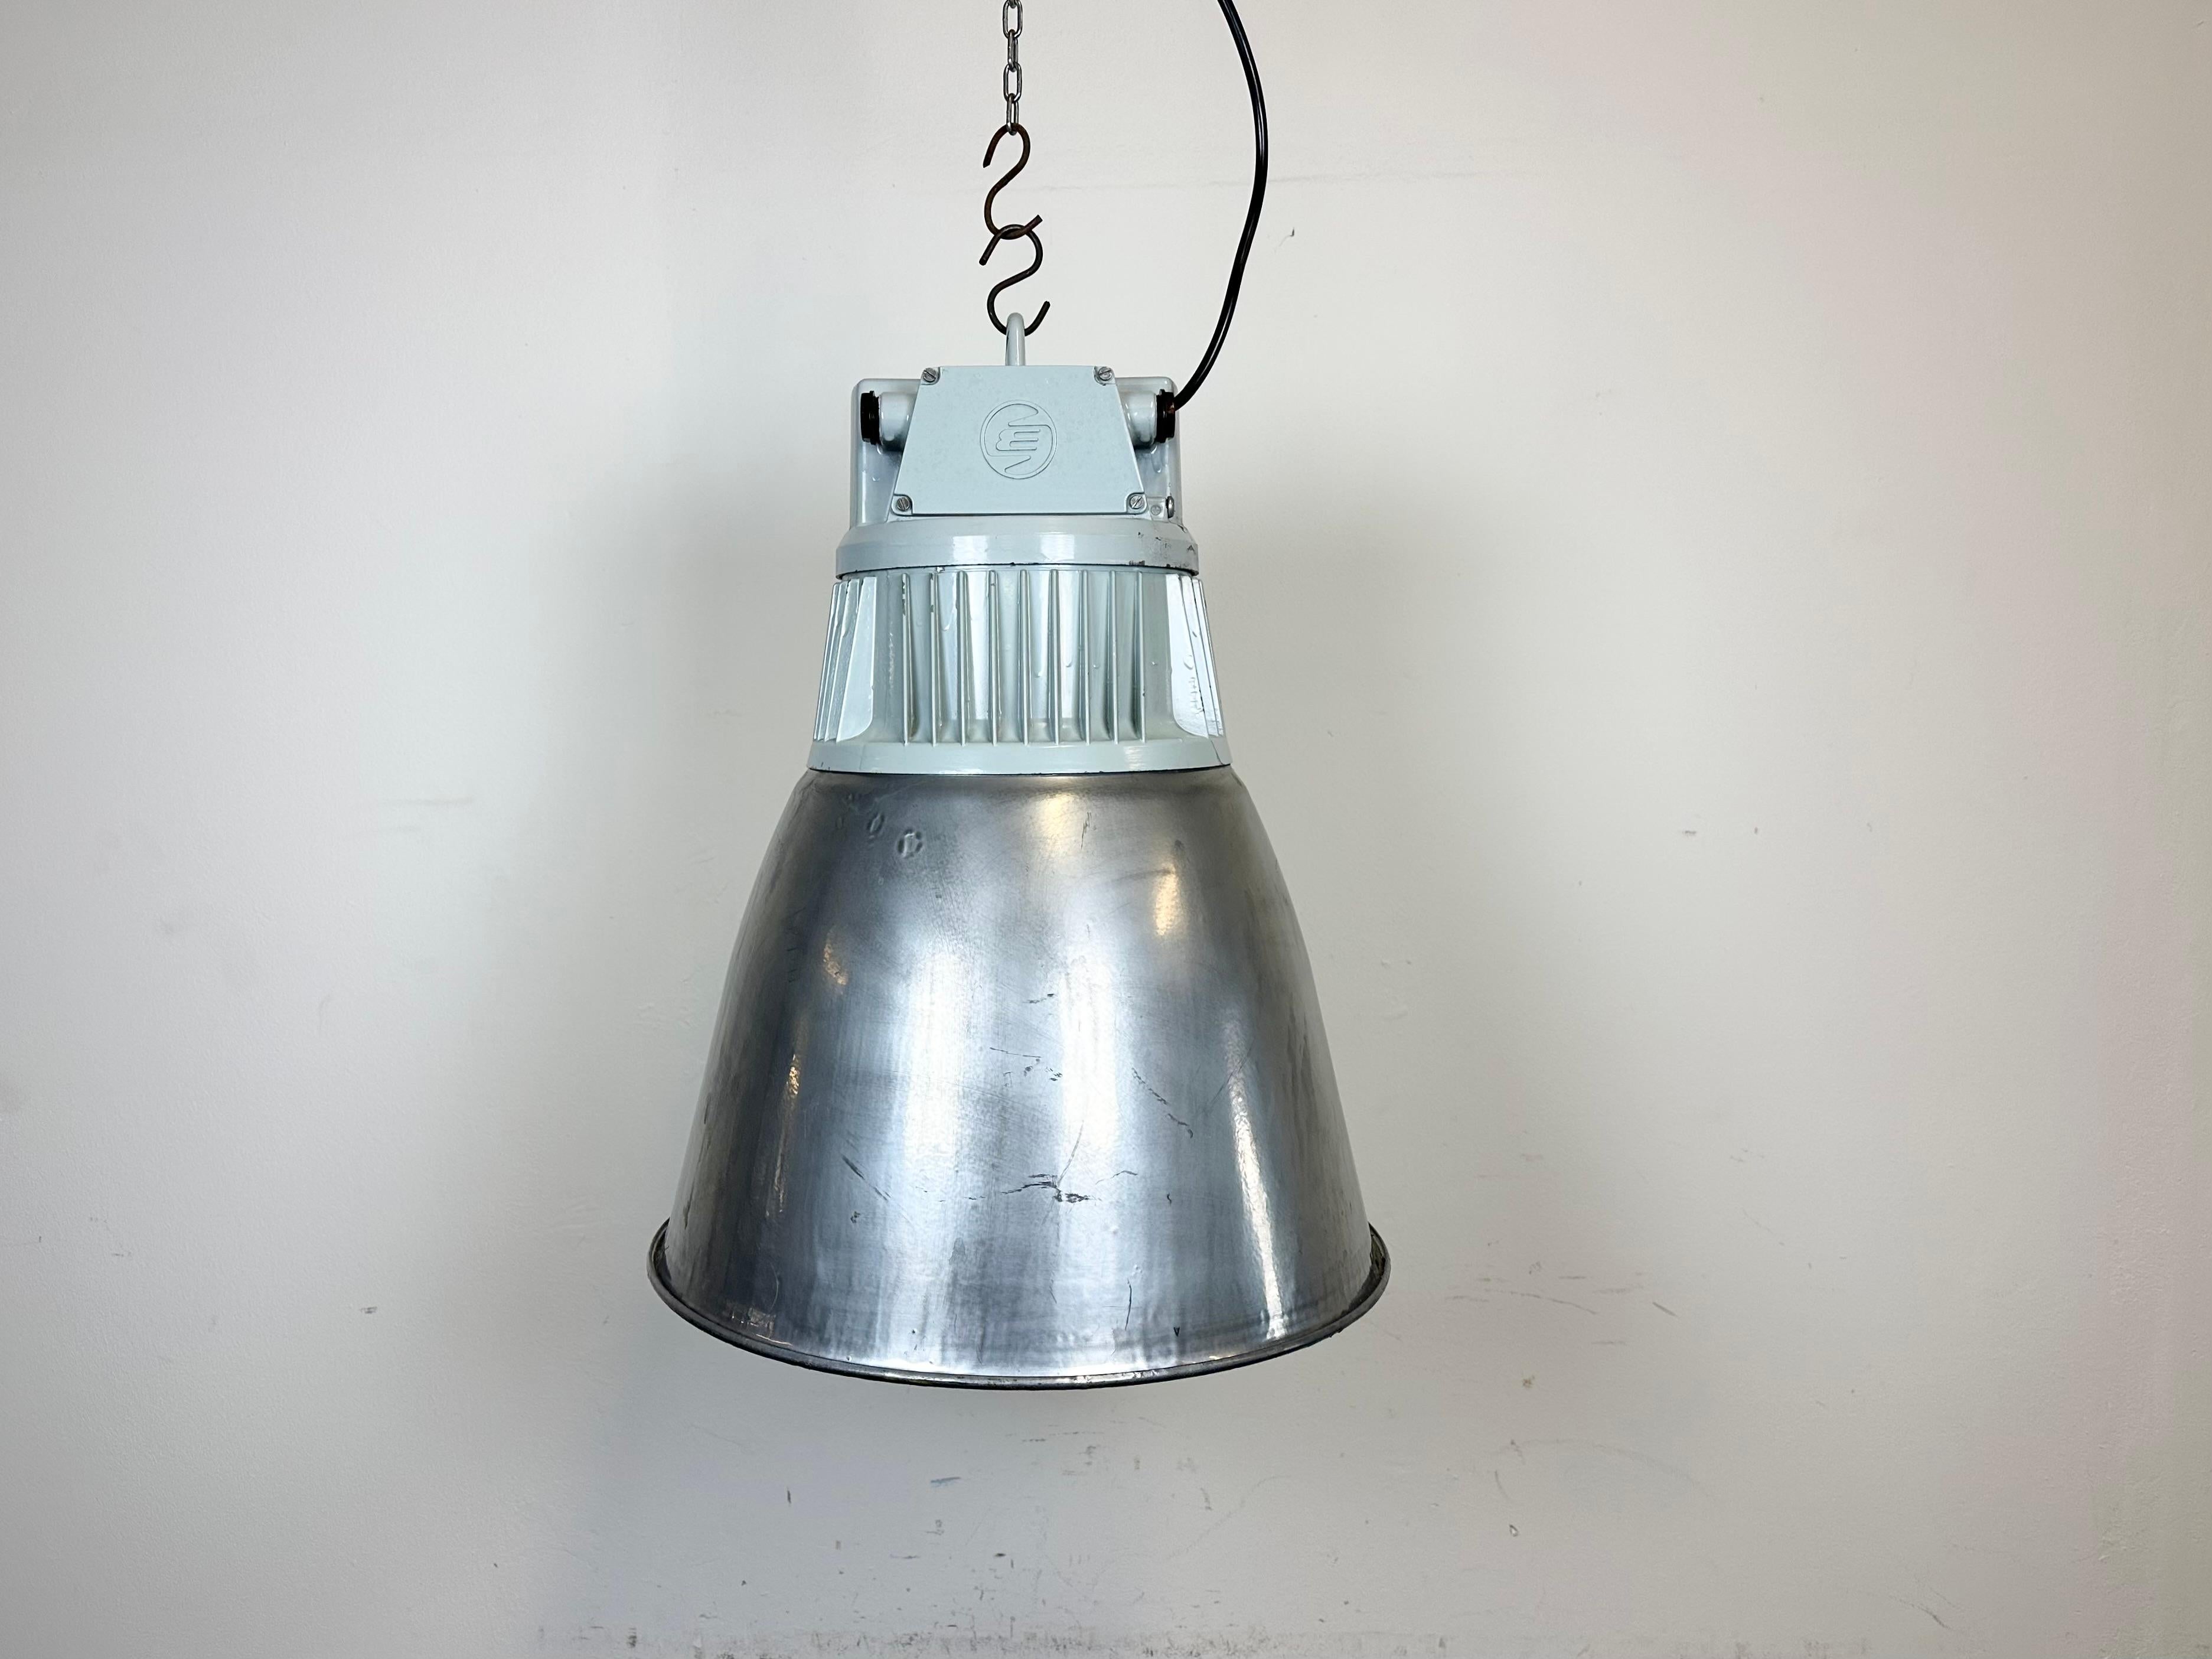 Industrielle Fabrikhallenleuchte
- Hergestellt von Elektrosvit
- Produziert in der ehemaligen Tschechoslowakei in den 1970er Jahren
- Eisen silberfarbener Schirm
- Graue Aluminiumgussplatte
- Gewicht: 5,8 kg
- Durchmesser : 43 cm
- Neue